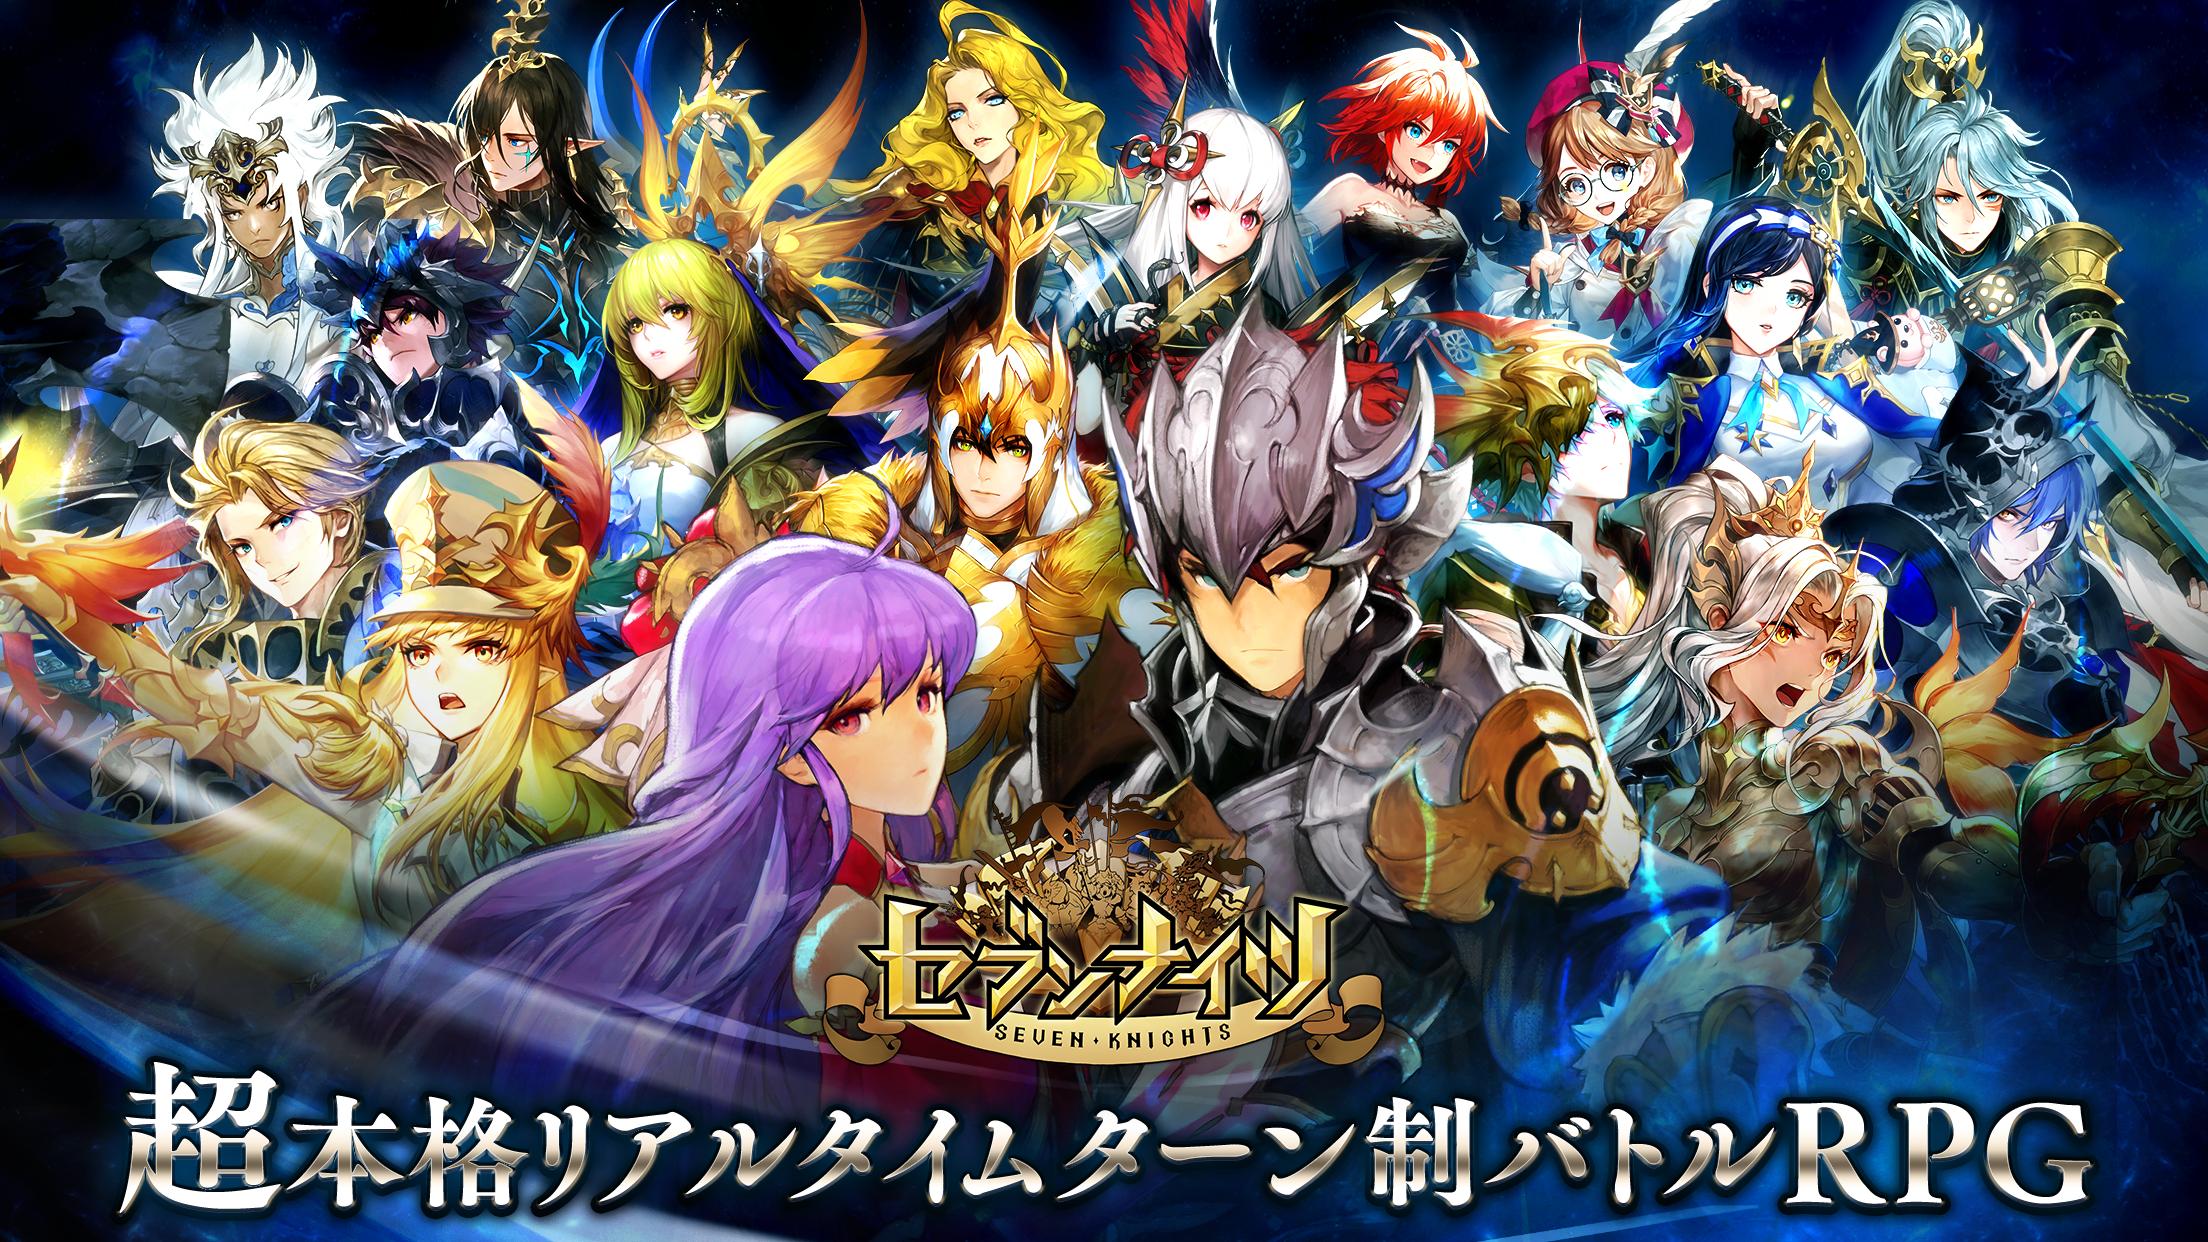 セブンナイツ Seven Knights For Android Apk Download